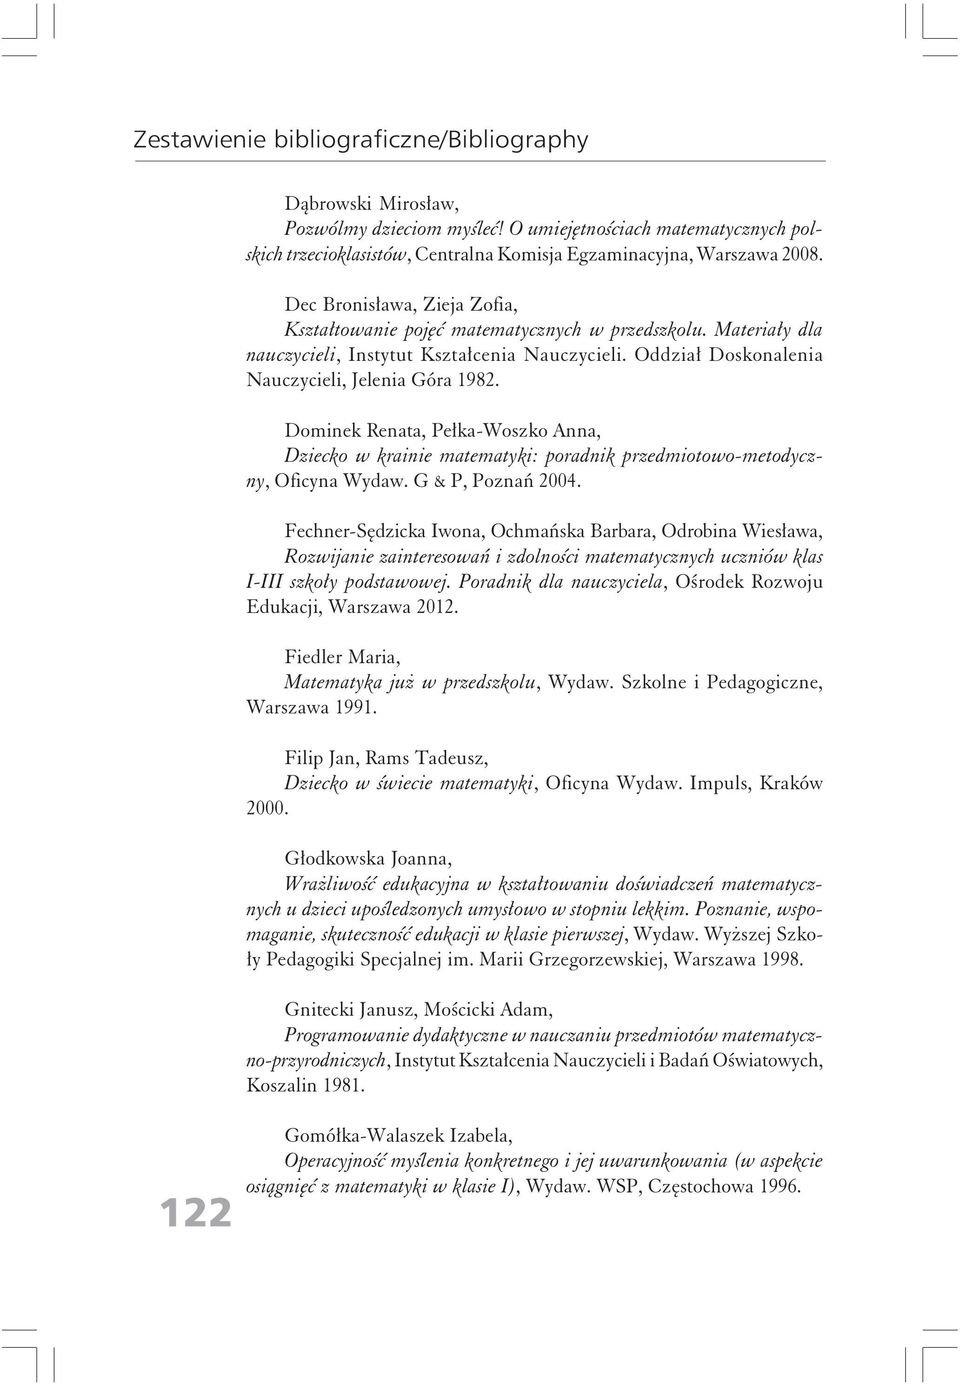 Dominek Renata, Pełka-Woszko Anna, Dziecko w krainie matematyki: poradnik przedmiotowo-metodyczny, Oficyna Wydaw. G & P, Poznań 2004.